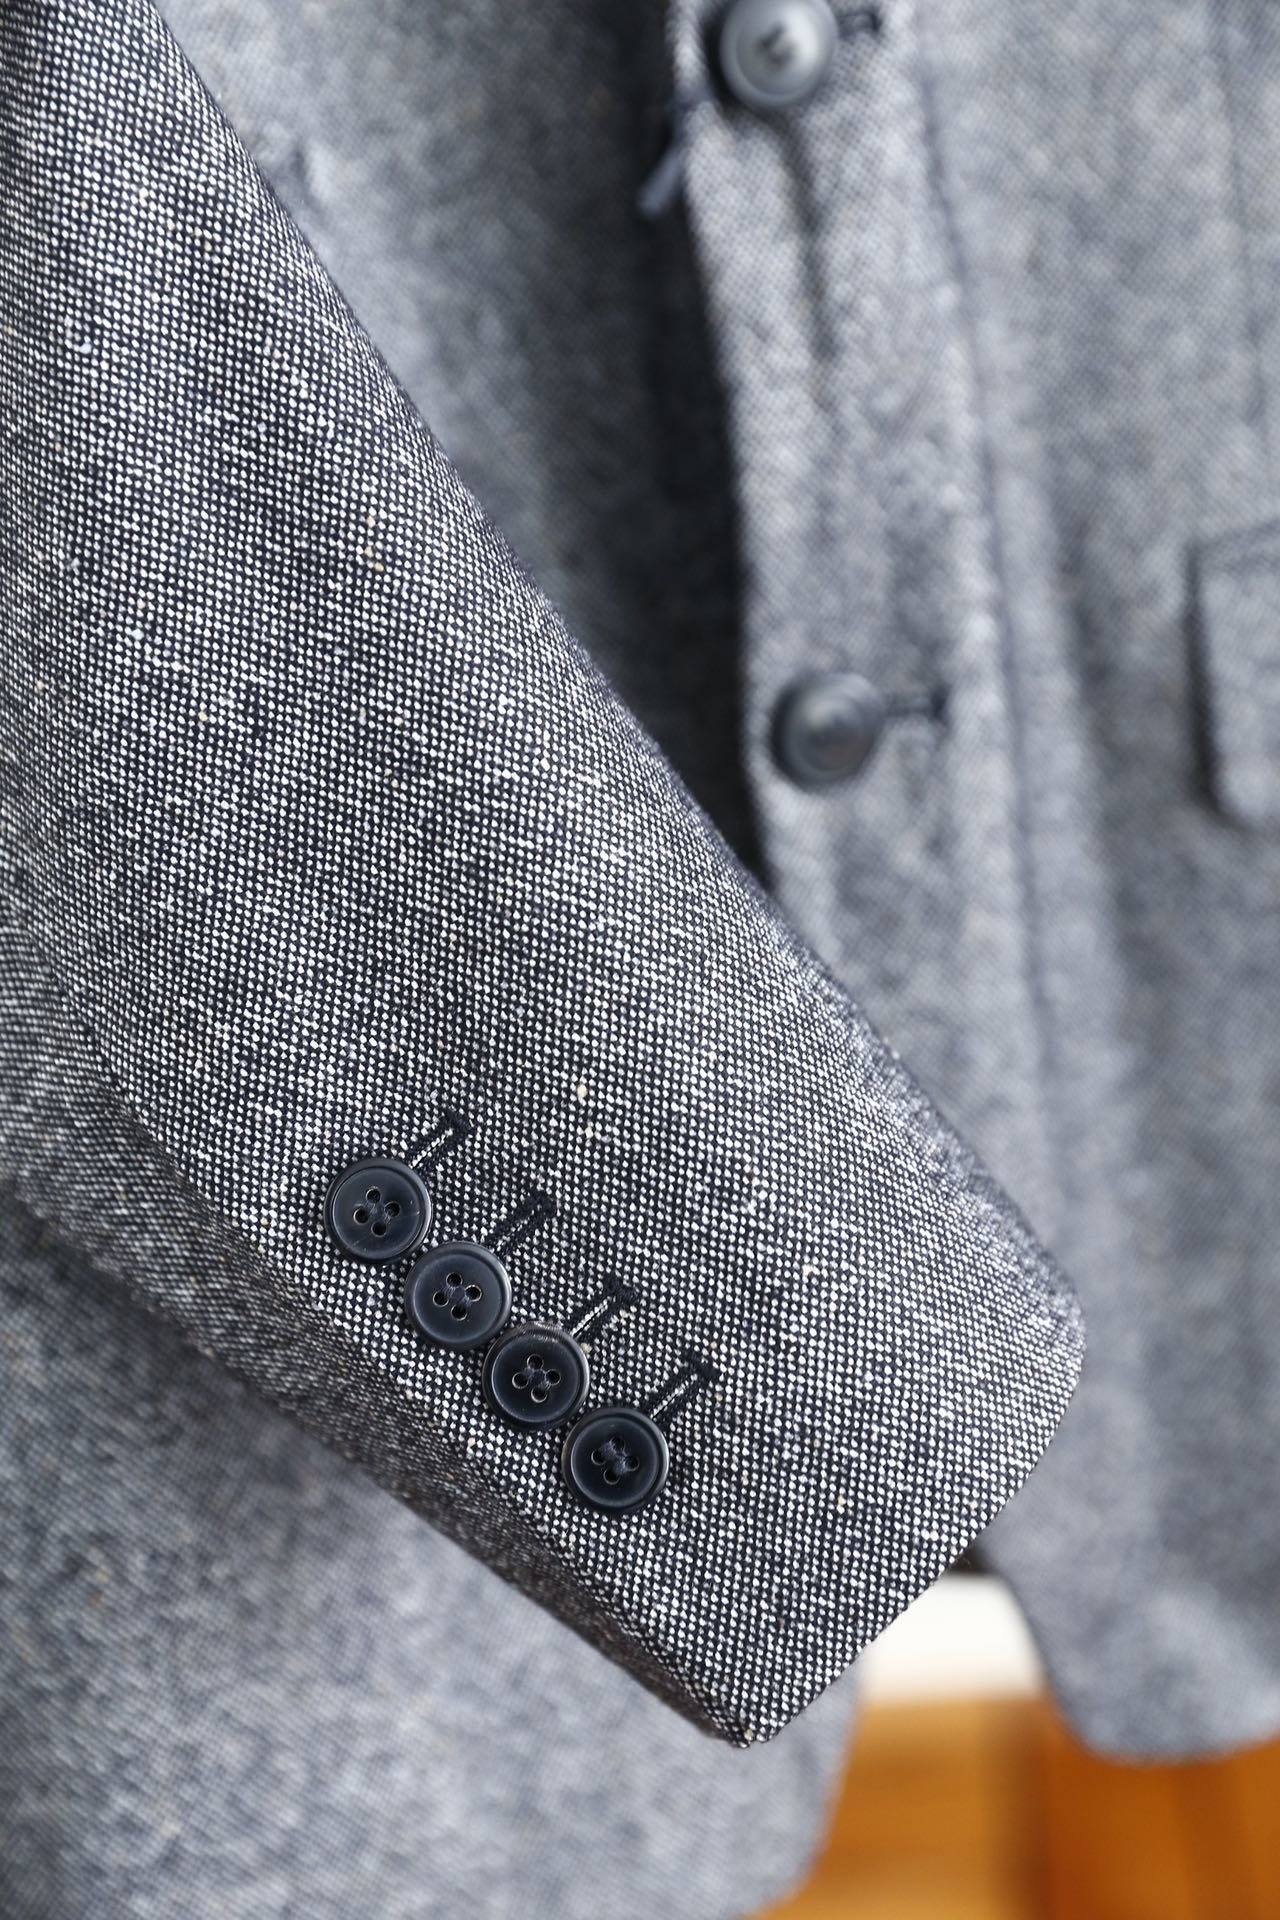 路易威*/LouisVuit*on.时尚男士羊毛西服贸易公司渠道货人气极高的一款单品通体的造型颇具设计感